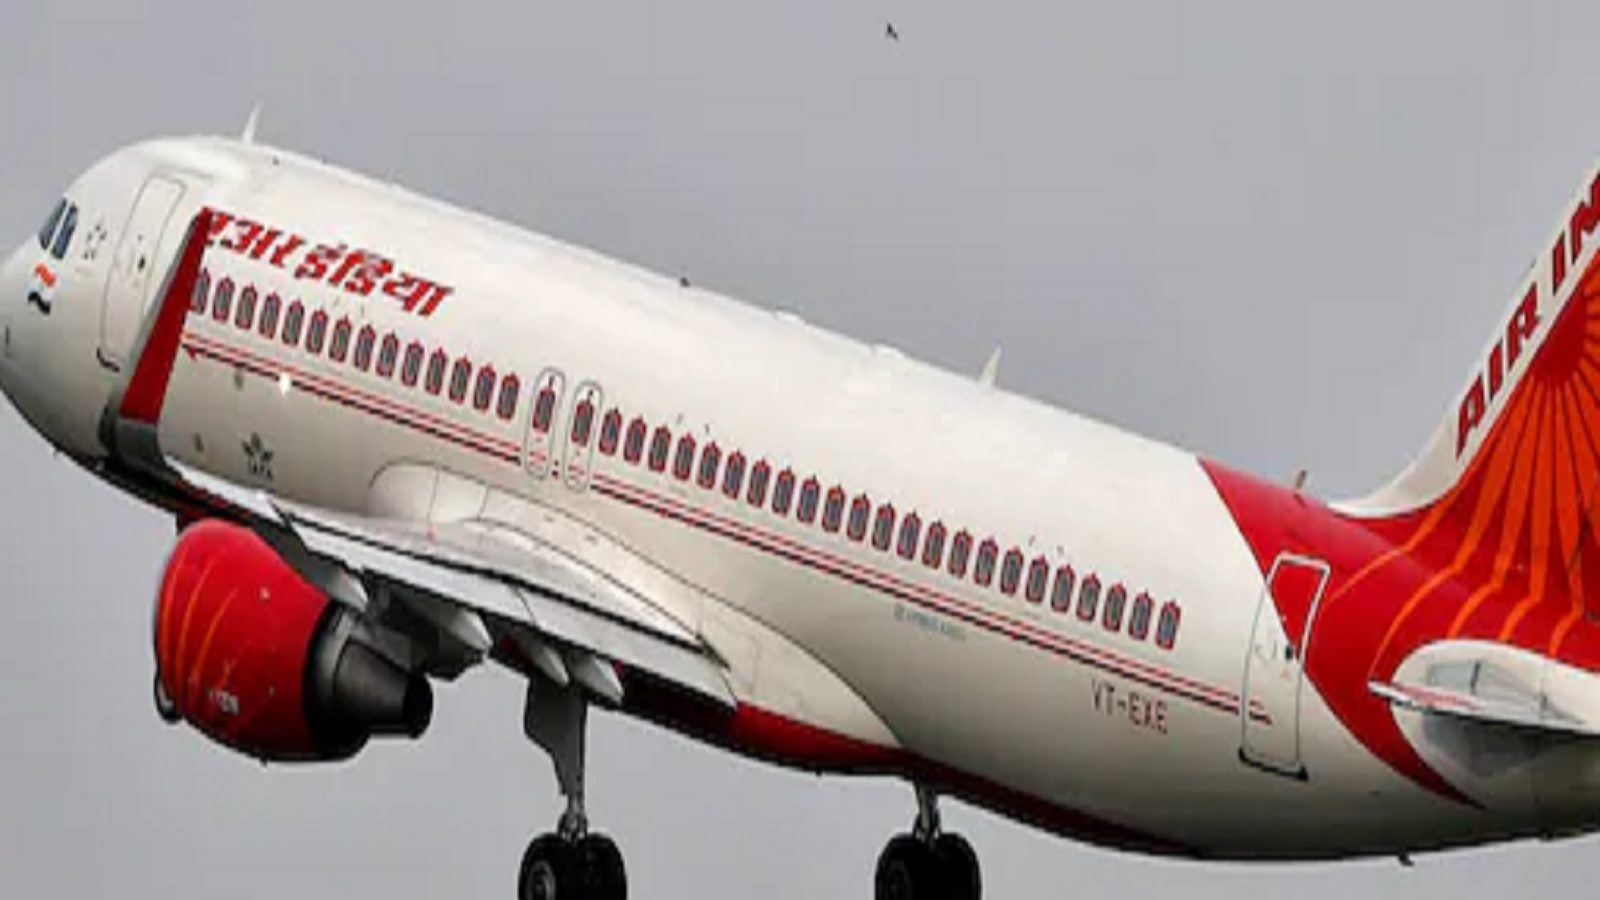 भारत और रूस के बीच अब कोई सीधी हवाई सेवा नहीं, एयर इंडिया ने दो सीधी उड़ानें निलंबित कीं